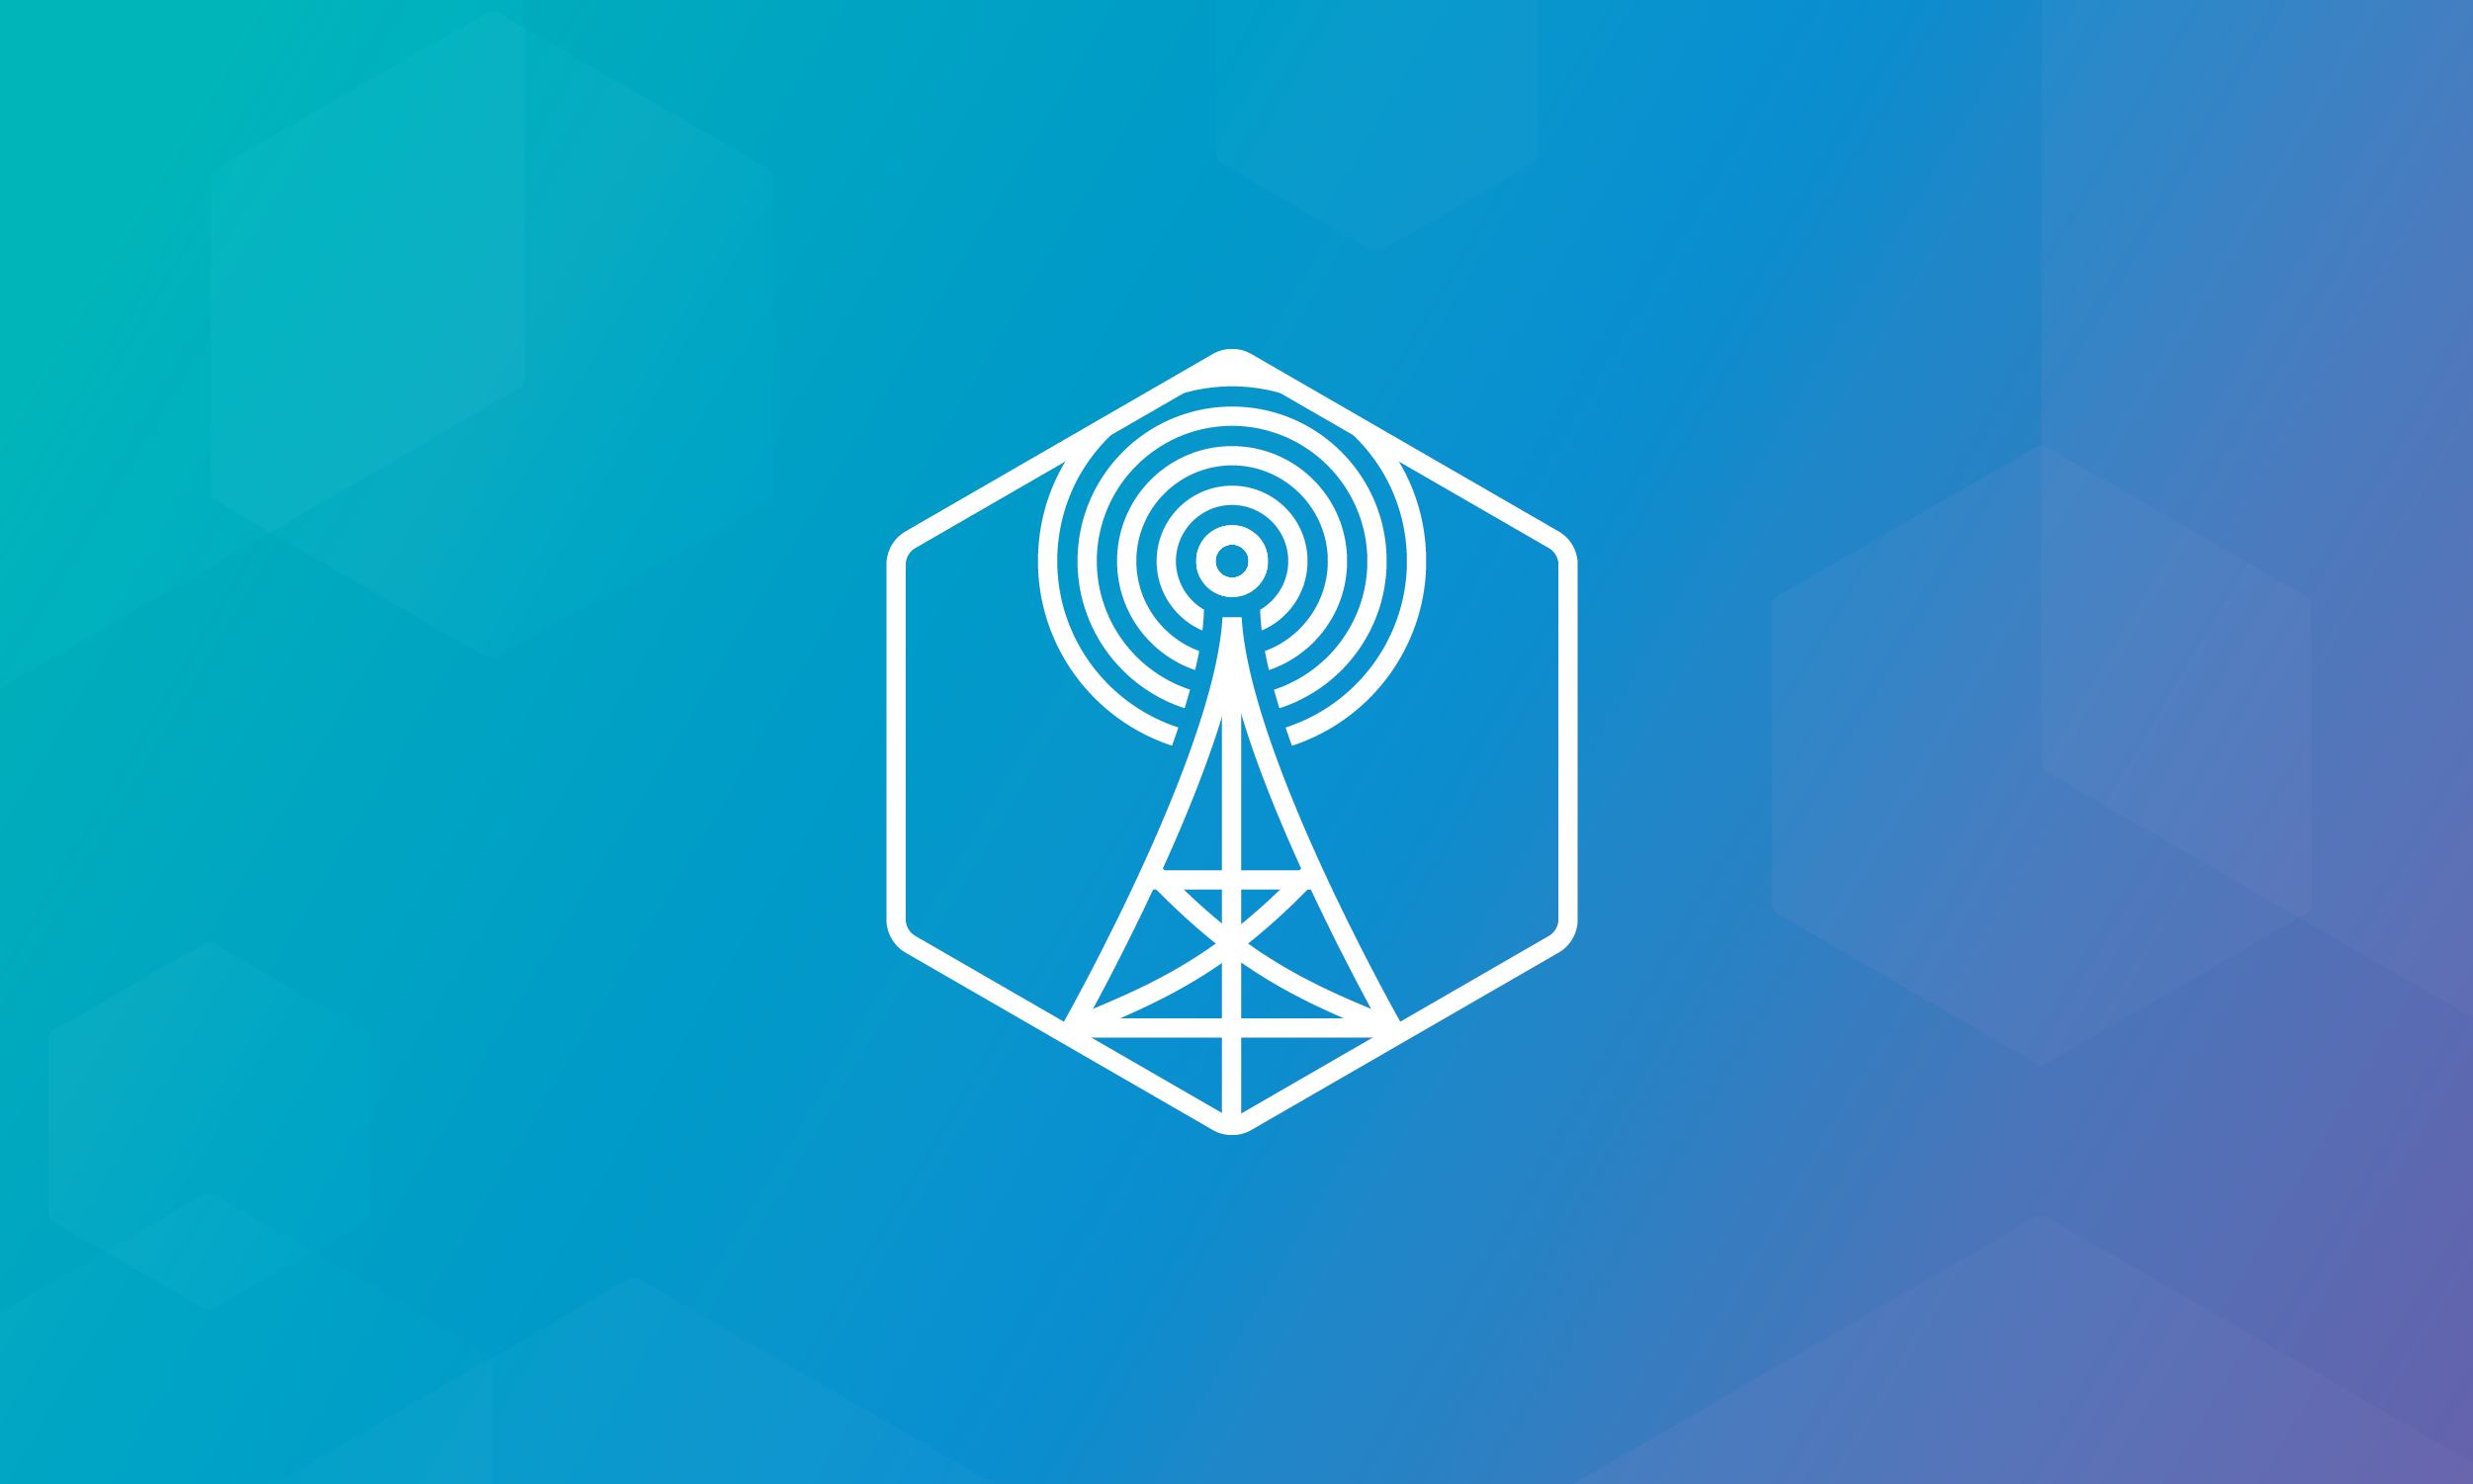 Telecomm antenna icon